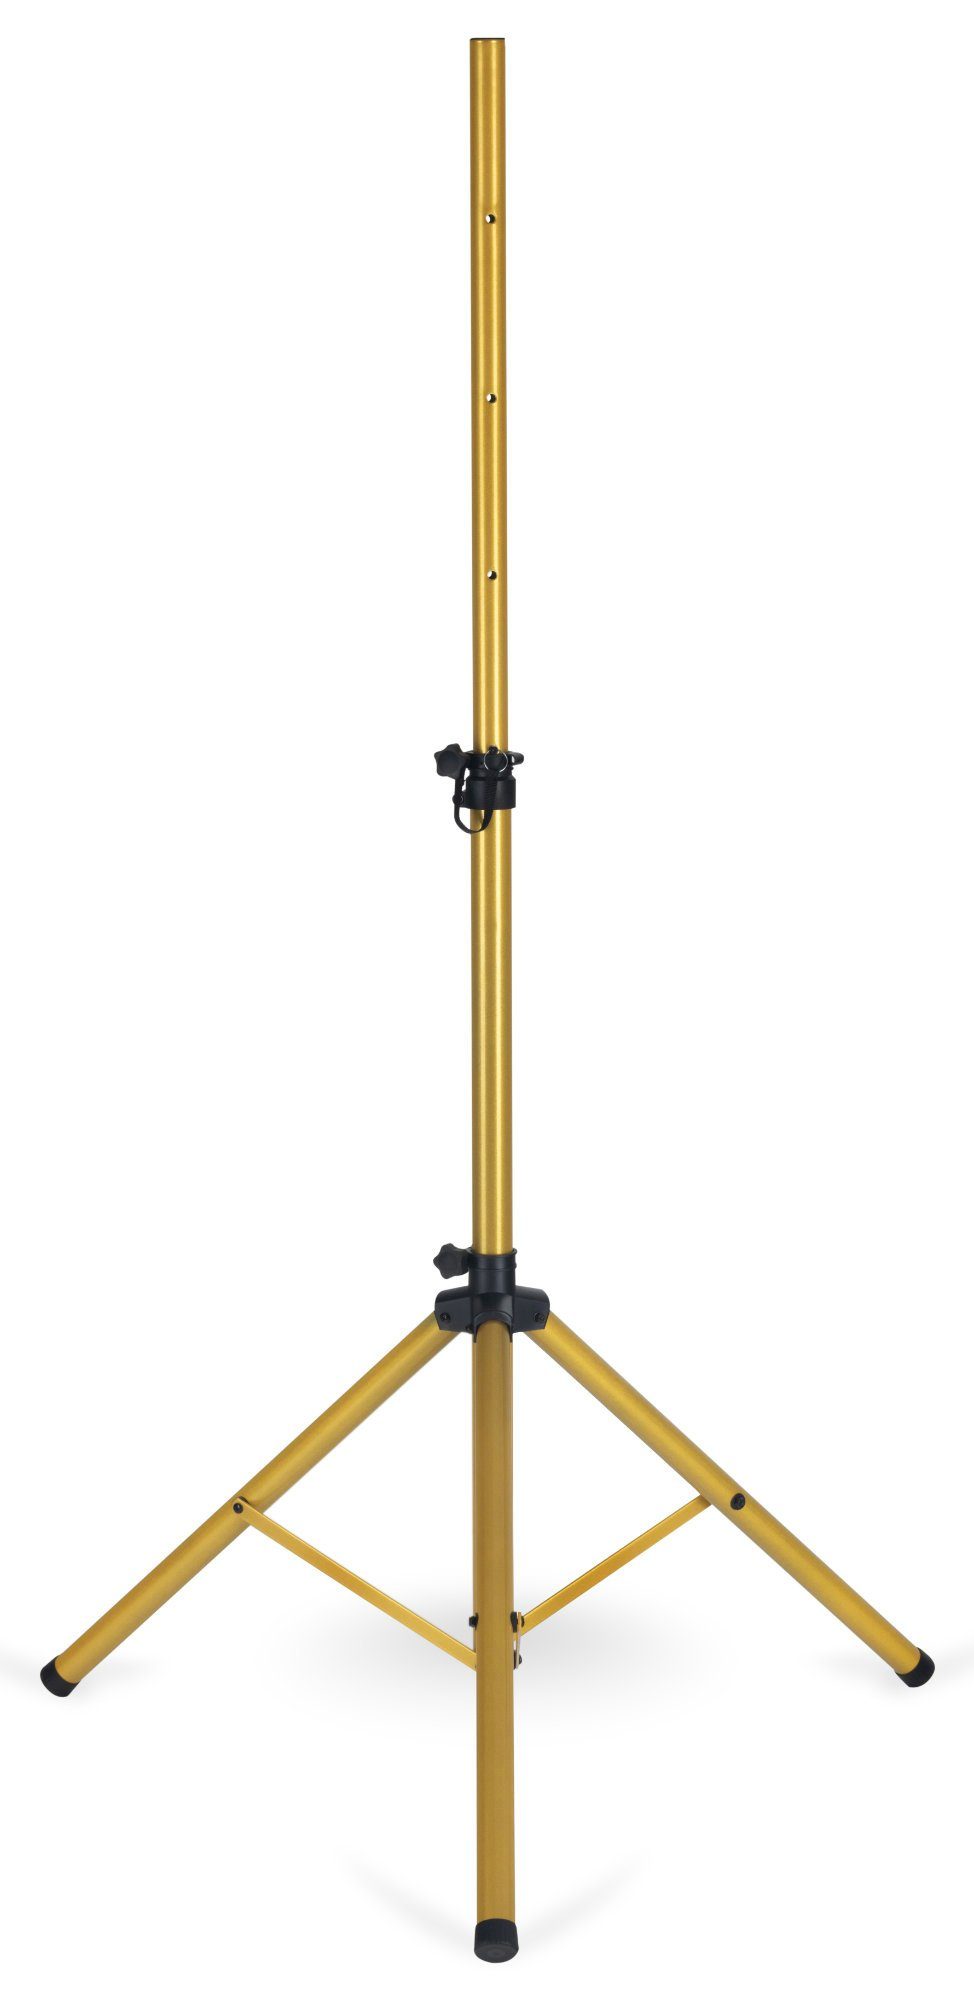 Pronomic Boxenstativ Stahl - Boxenständer mit Dreibein-Konstruktion Lautsprecherständer, (Höhenverstellbar, 1-tlg., Belastbarkeit bis 50 kg, auch als Dartstativ / Fotostativ verwendbar)